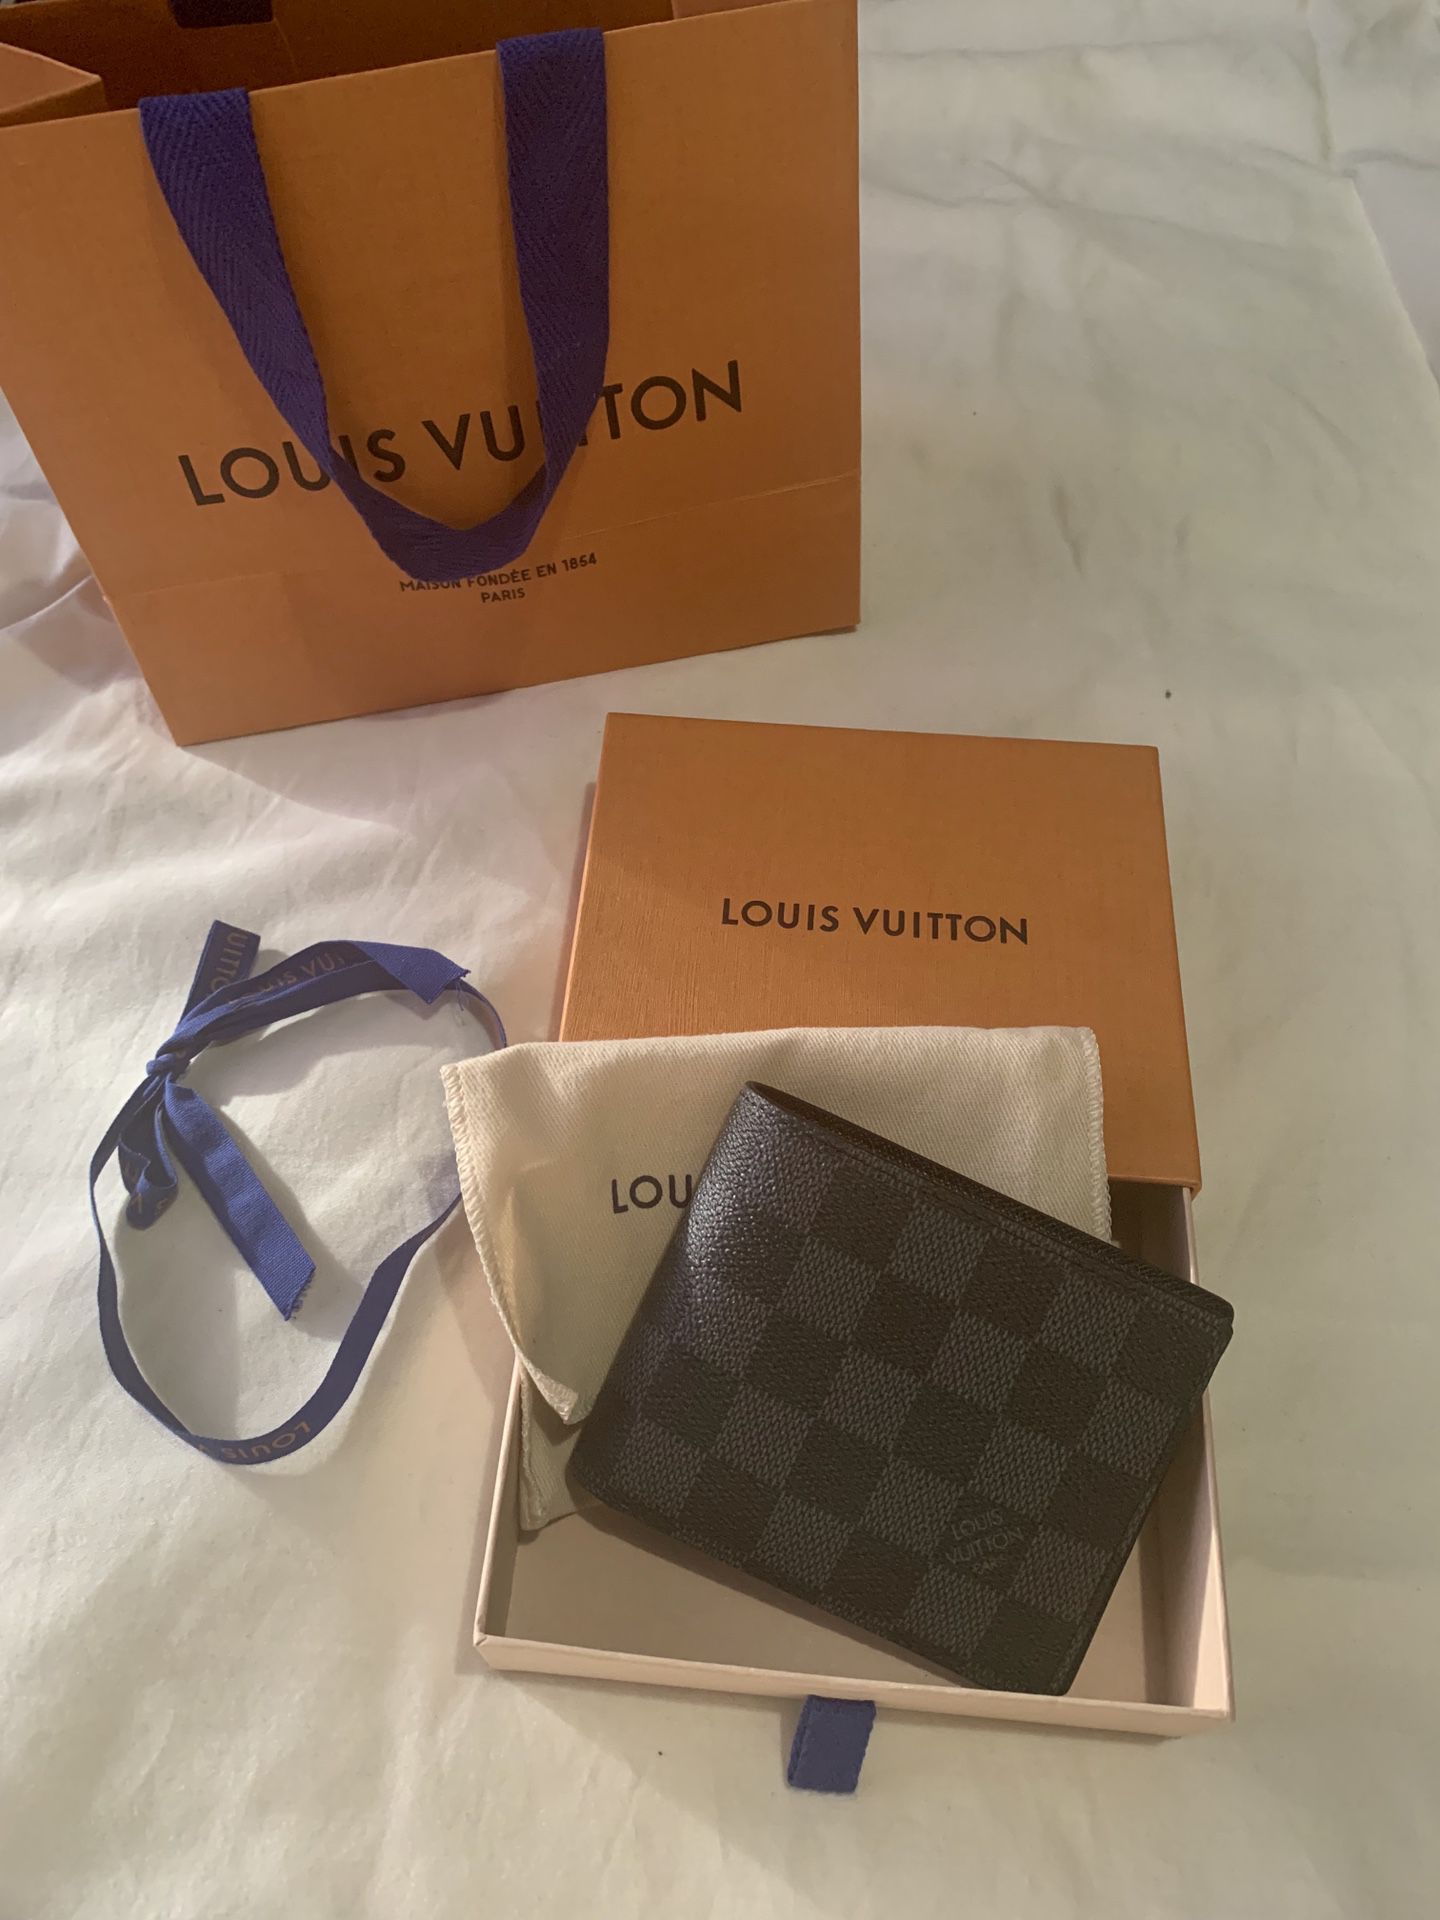 Louis Vuitton Men’s Wallet Like New for Sale in Monroe, WA - OfferUp